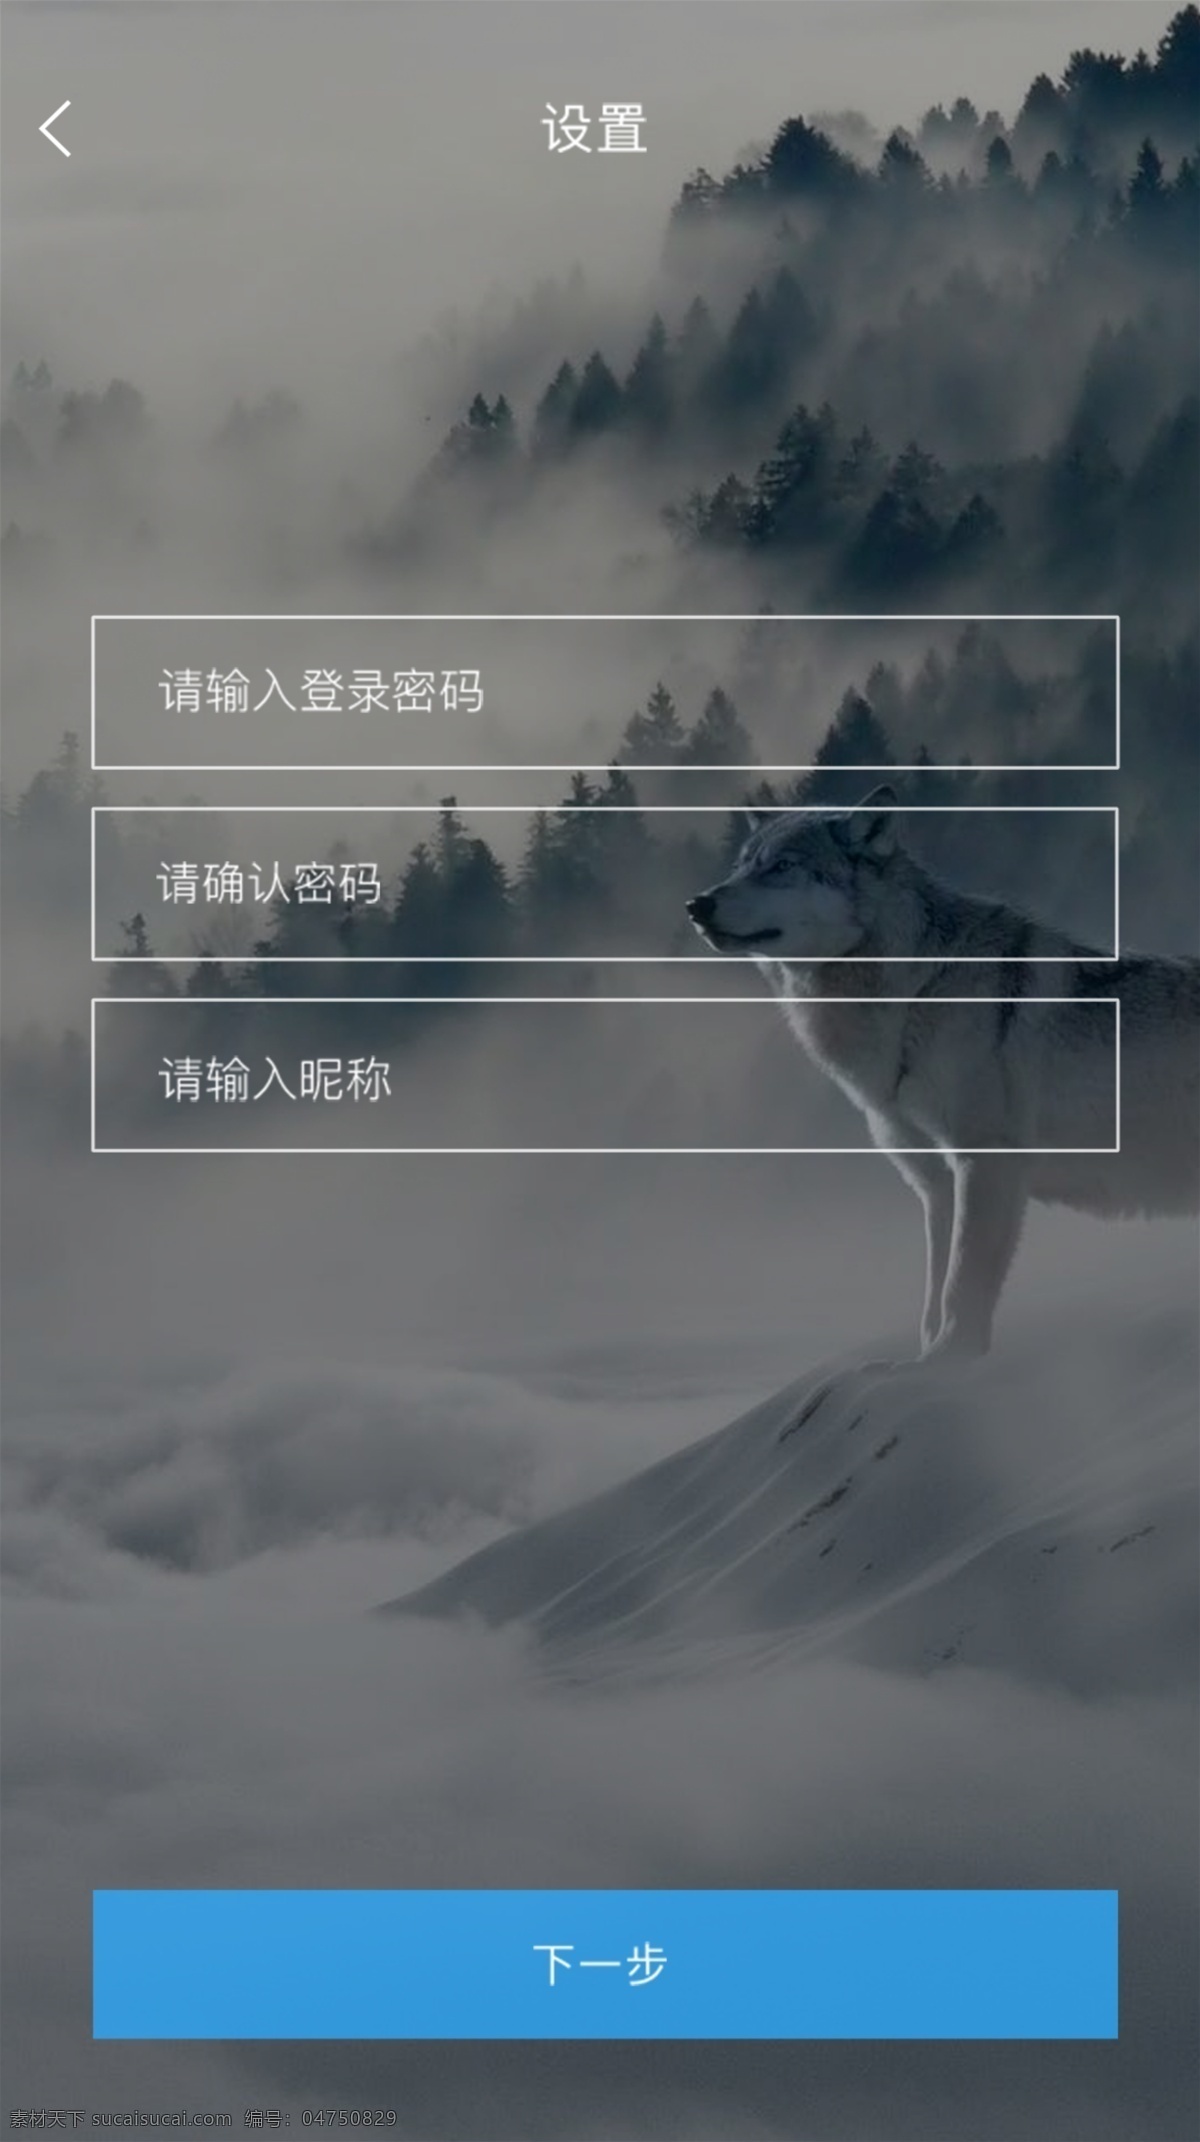 app 忘记 密码 信息 设置 页面 页面设计 中文模板 高清壁纸 忘记密码页面 忘记密码 白色 信息设置 修改密码 风景类app